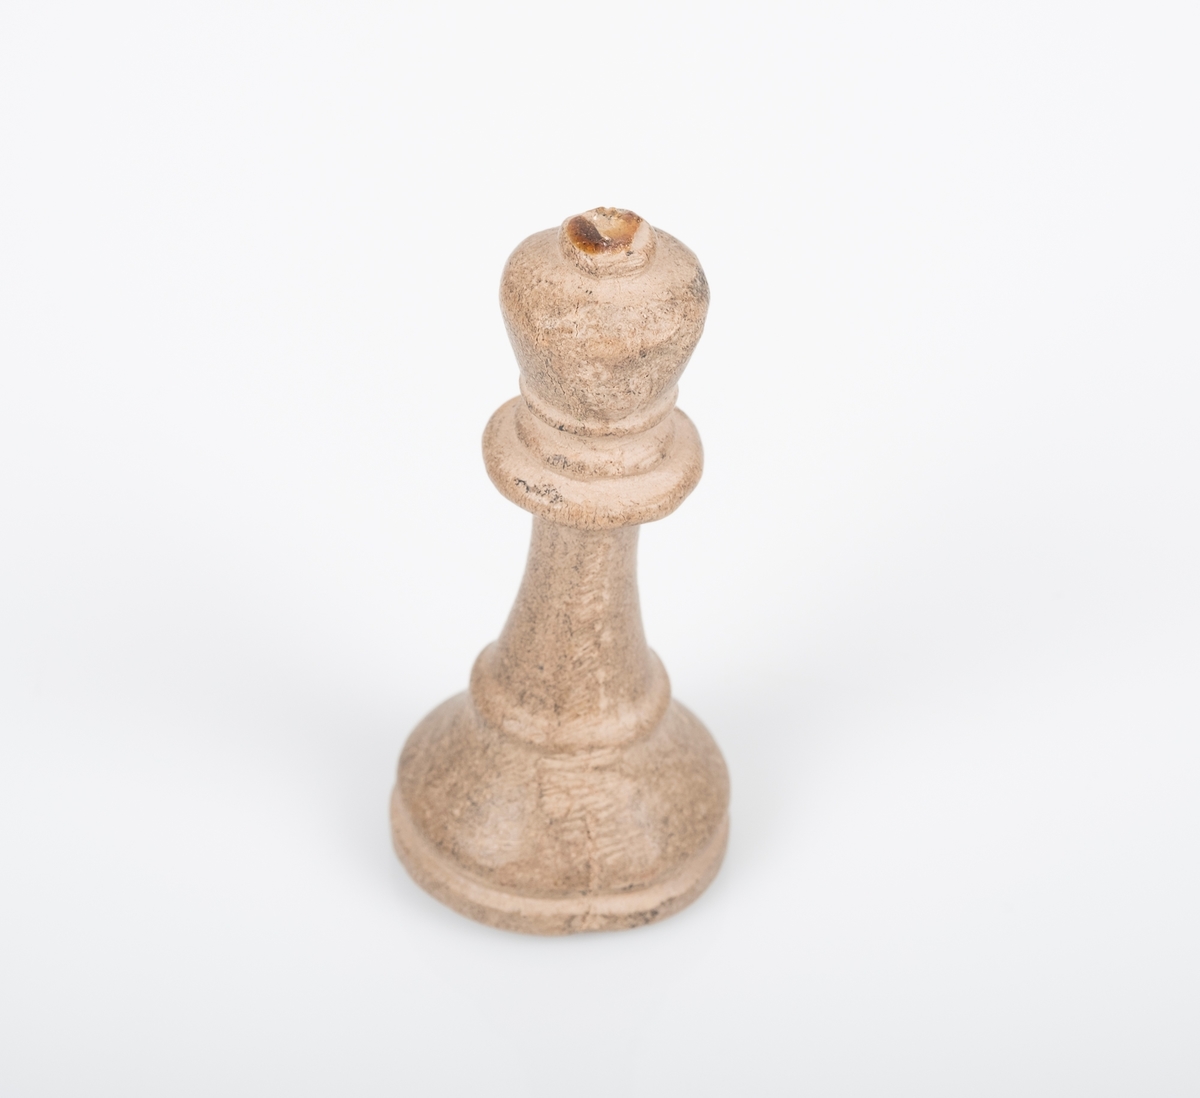 Sjakkbrikken (dronning) er laget av tre, og er malt hvit/grå. Det ser ut som den har blitt grå ved bruk. Lim på toppen av krona som tyder på at det har vært festet noe der, trolig et kors. Et lite hull på undersiden som er fylt med noe rosa.